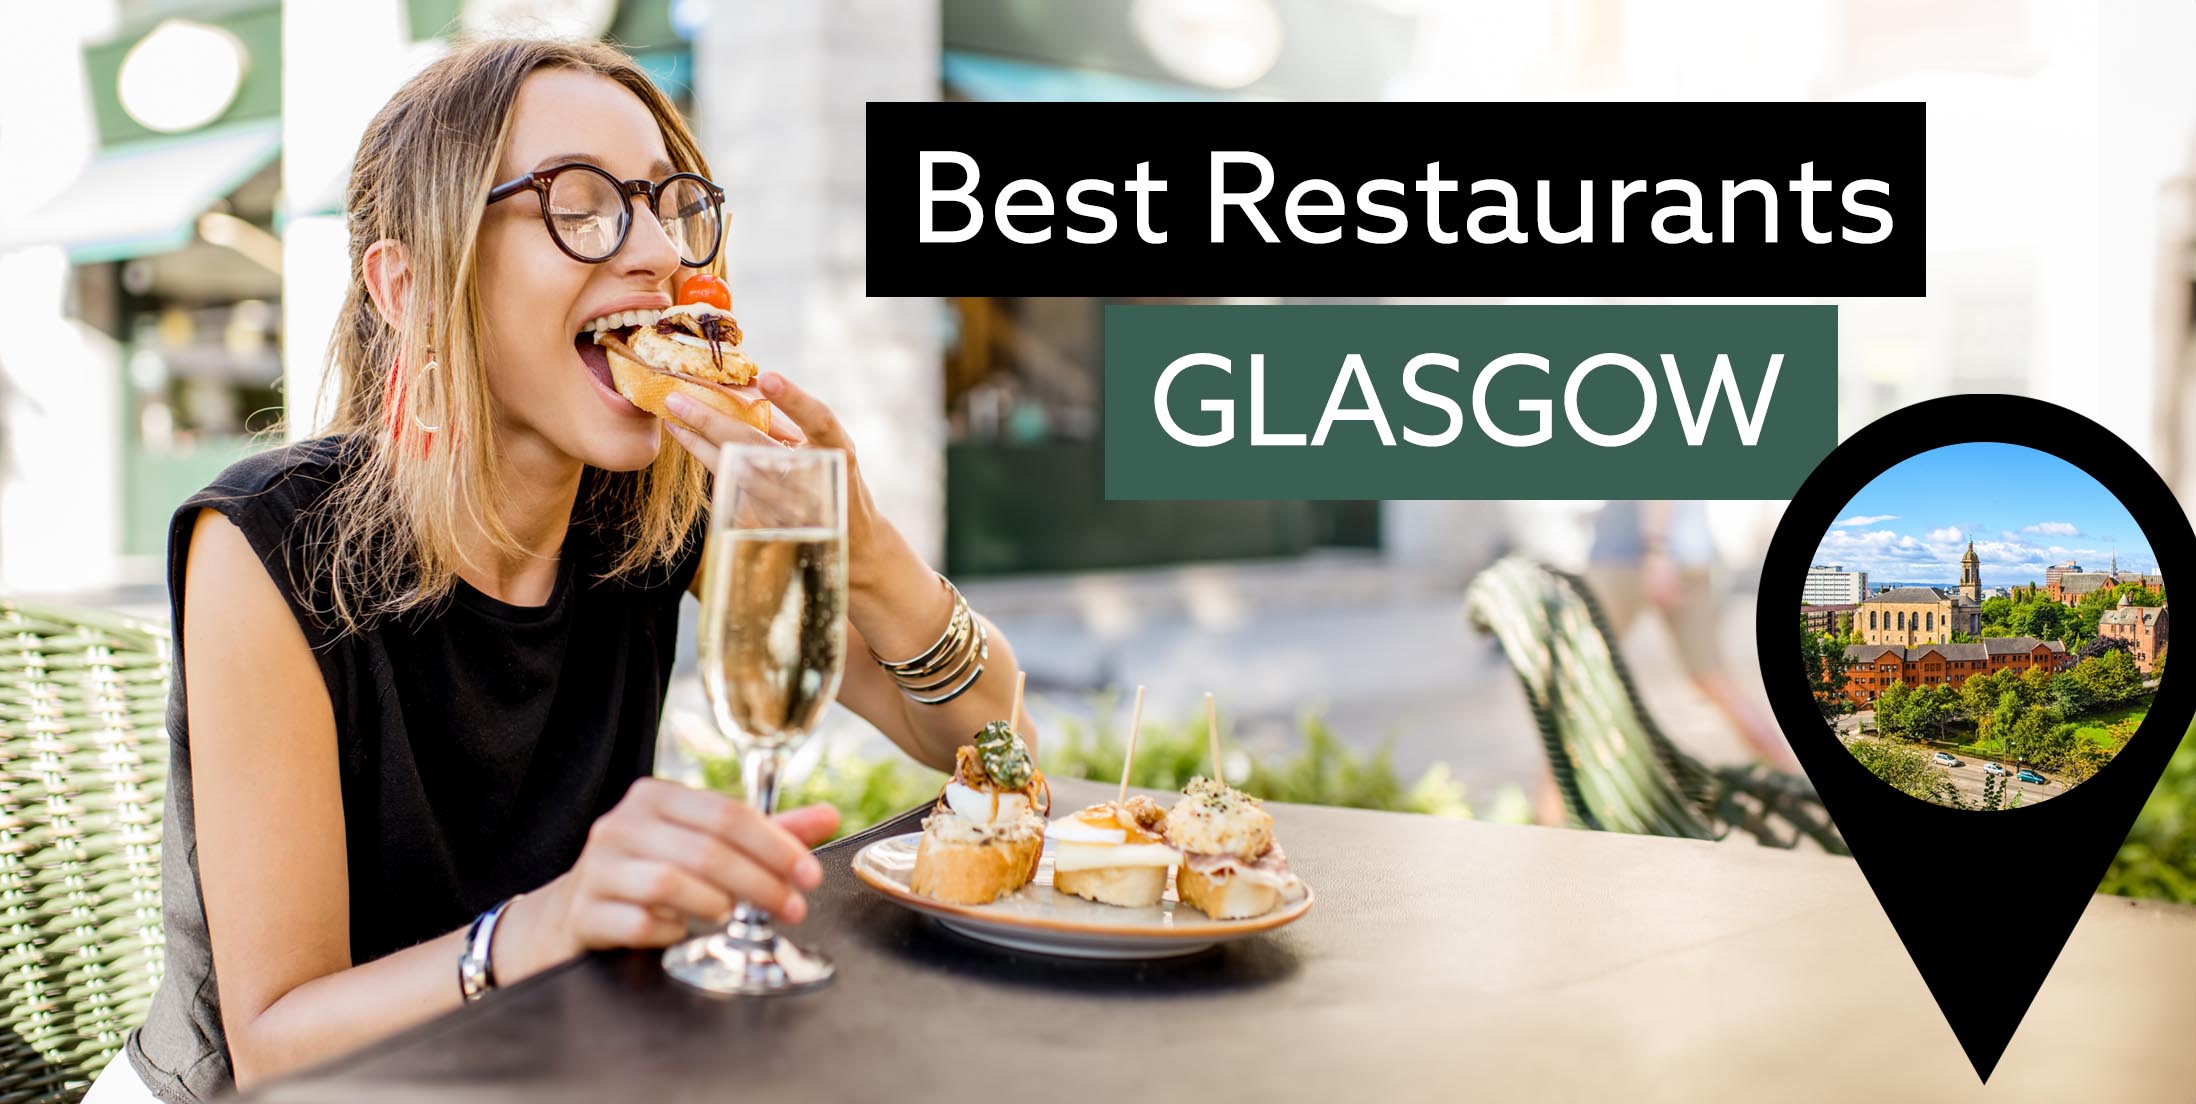 Best Restaurants in Glasgow